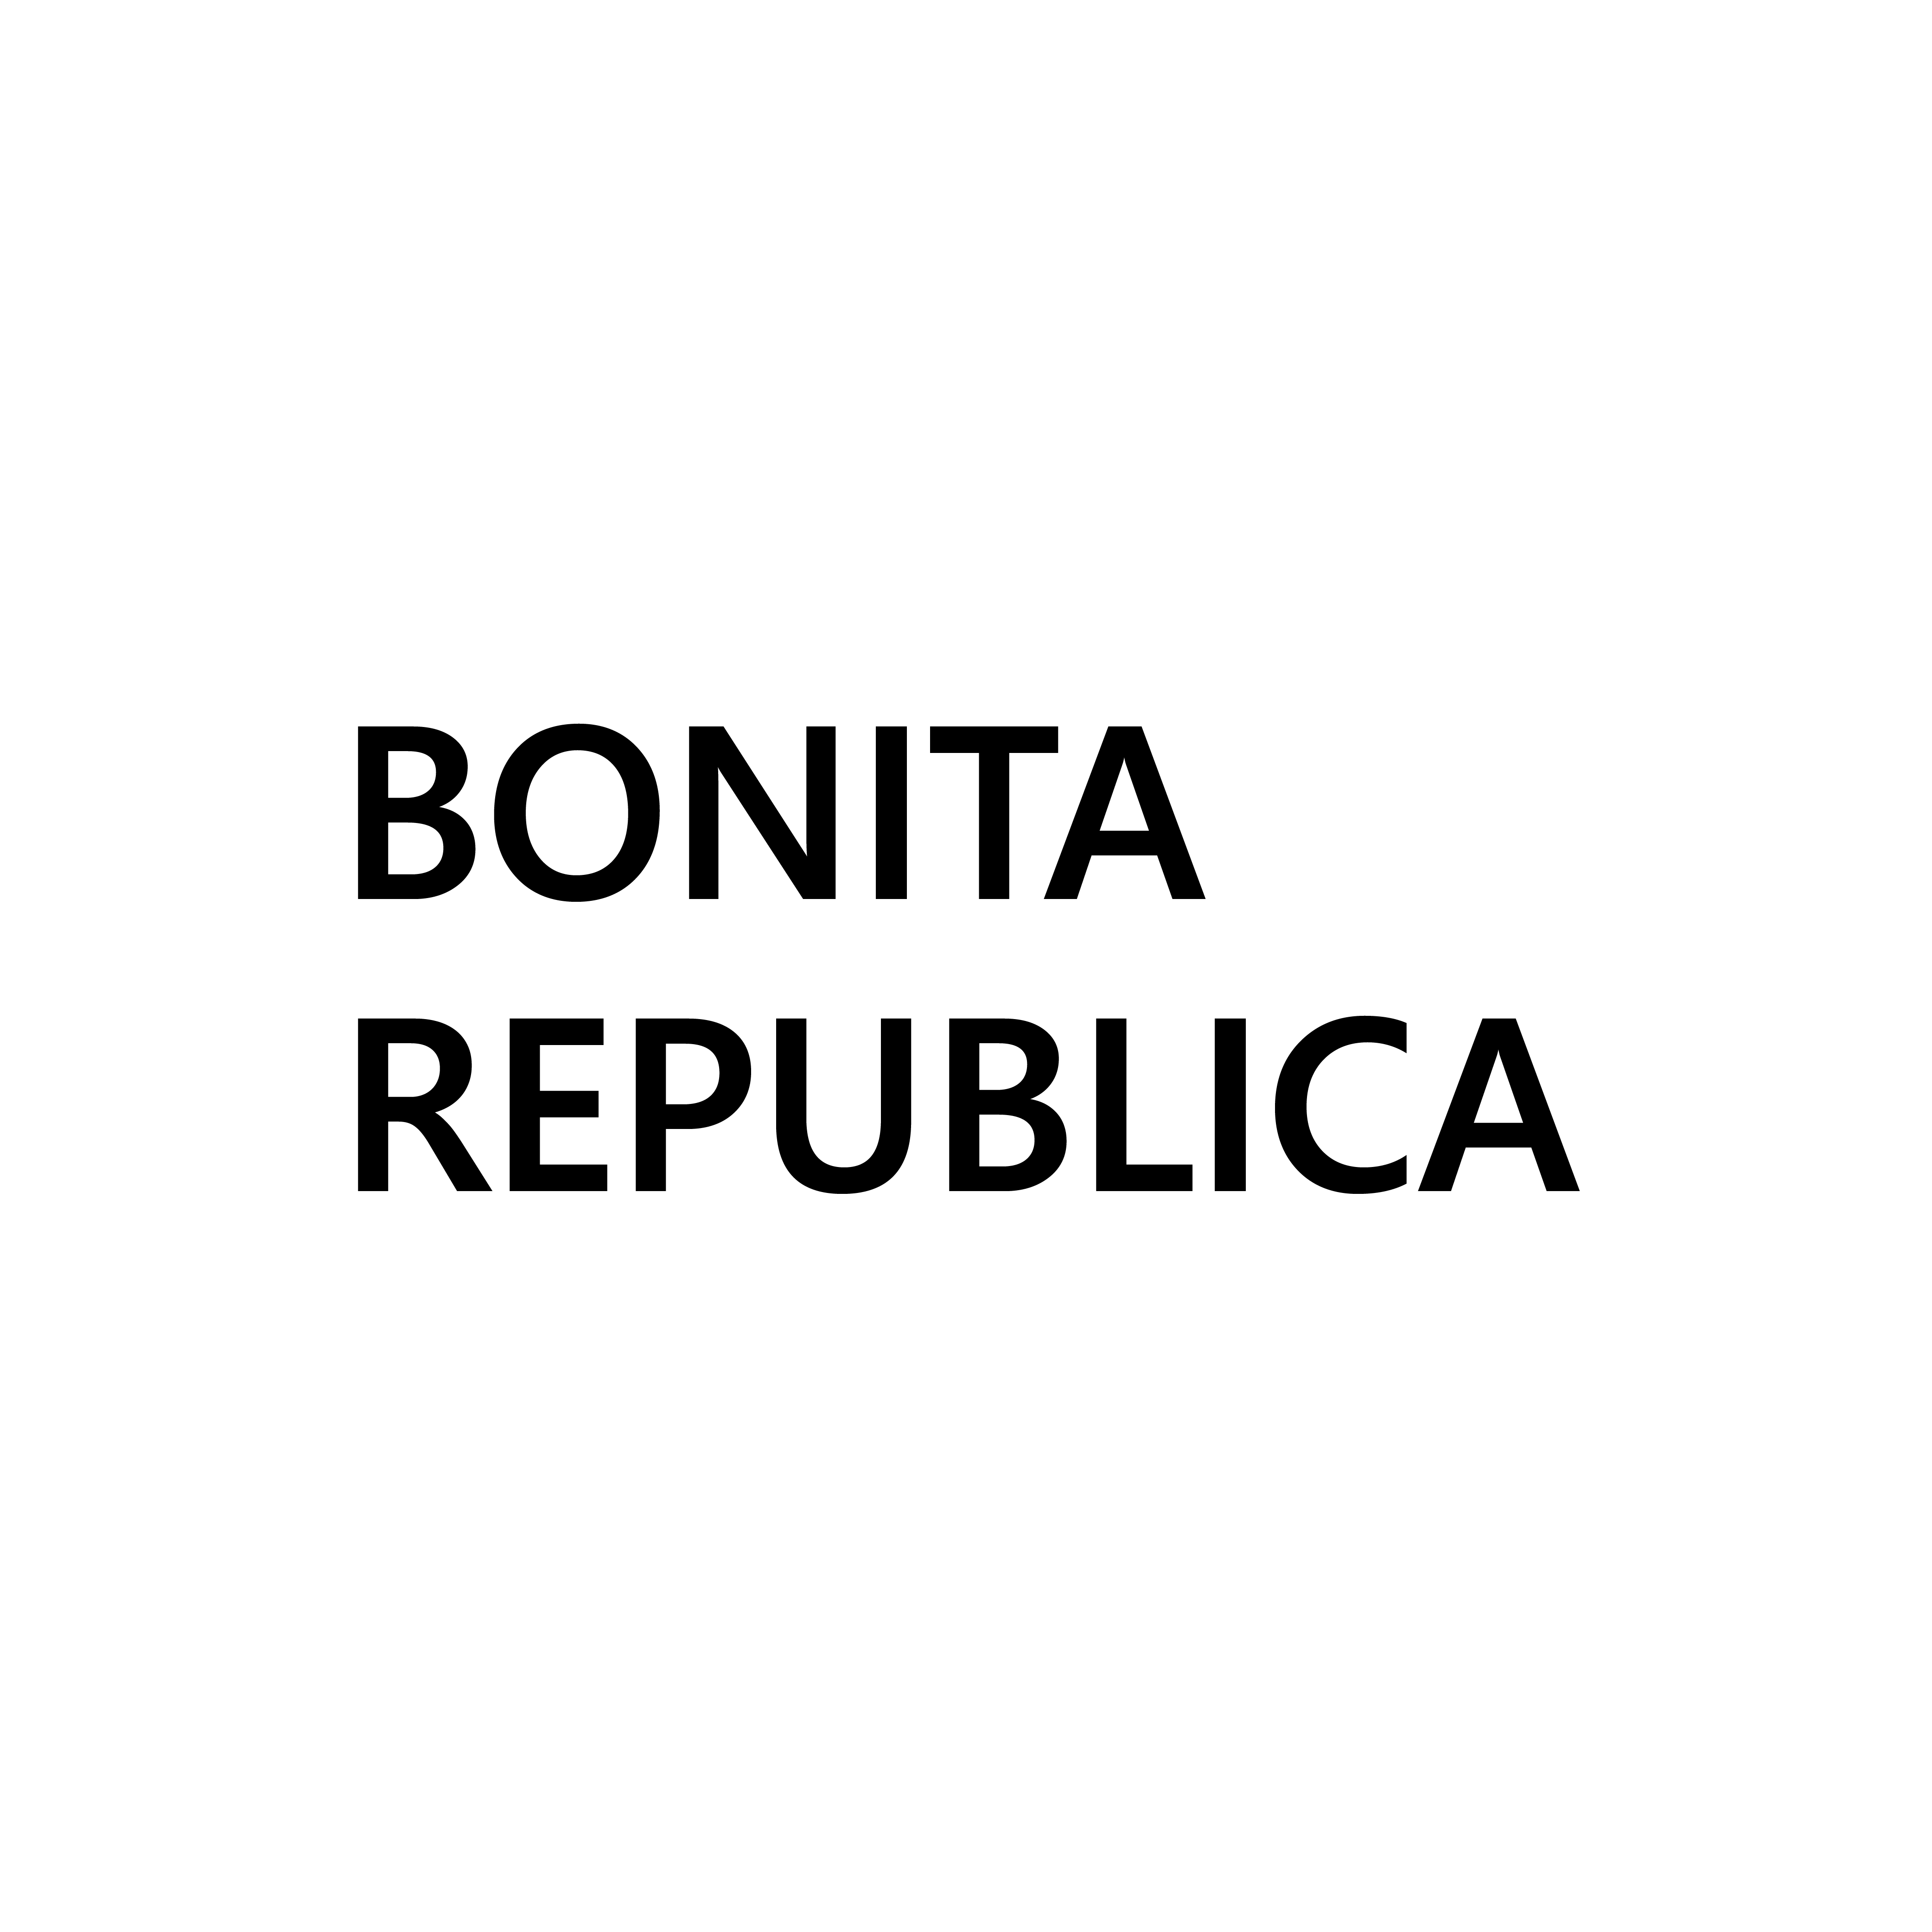 Bonita Republica